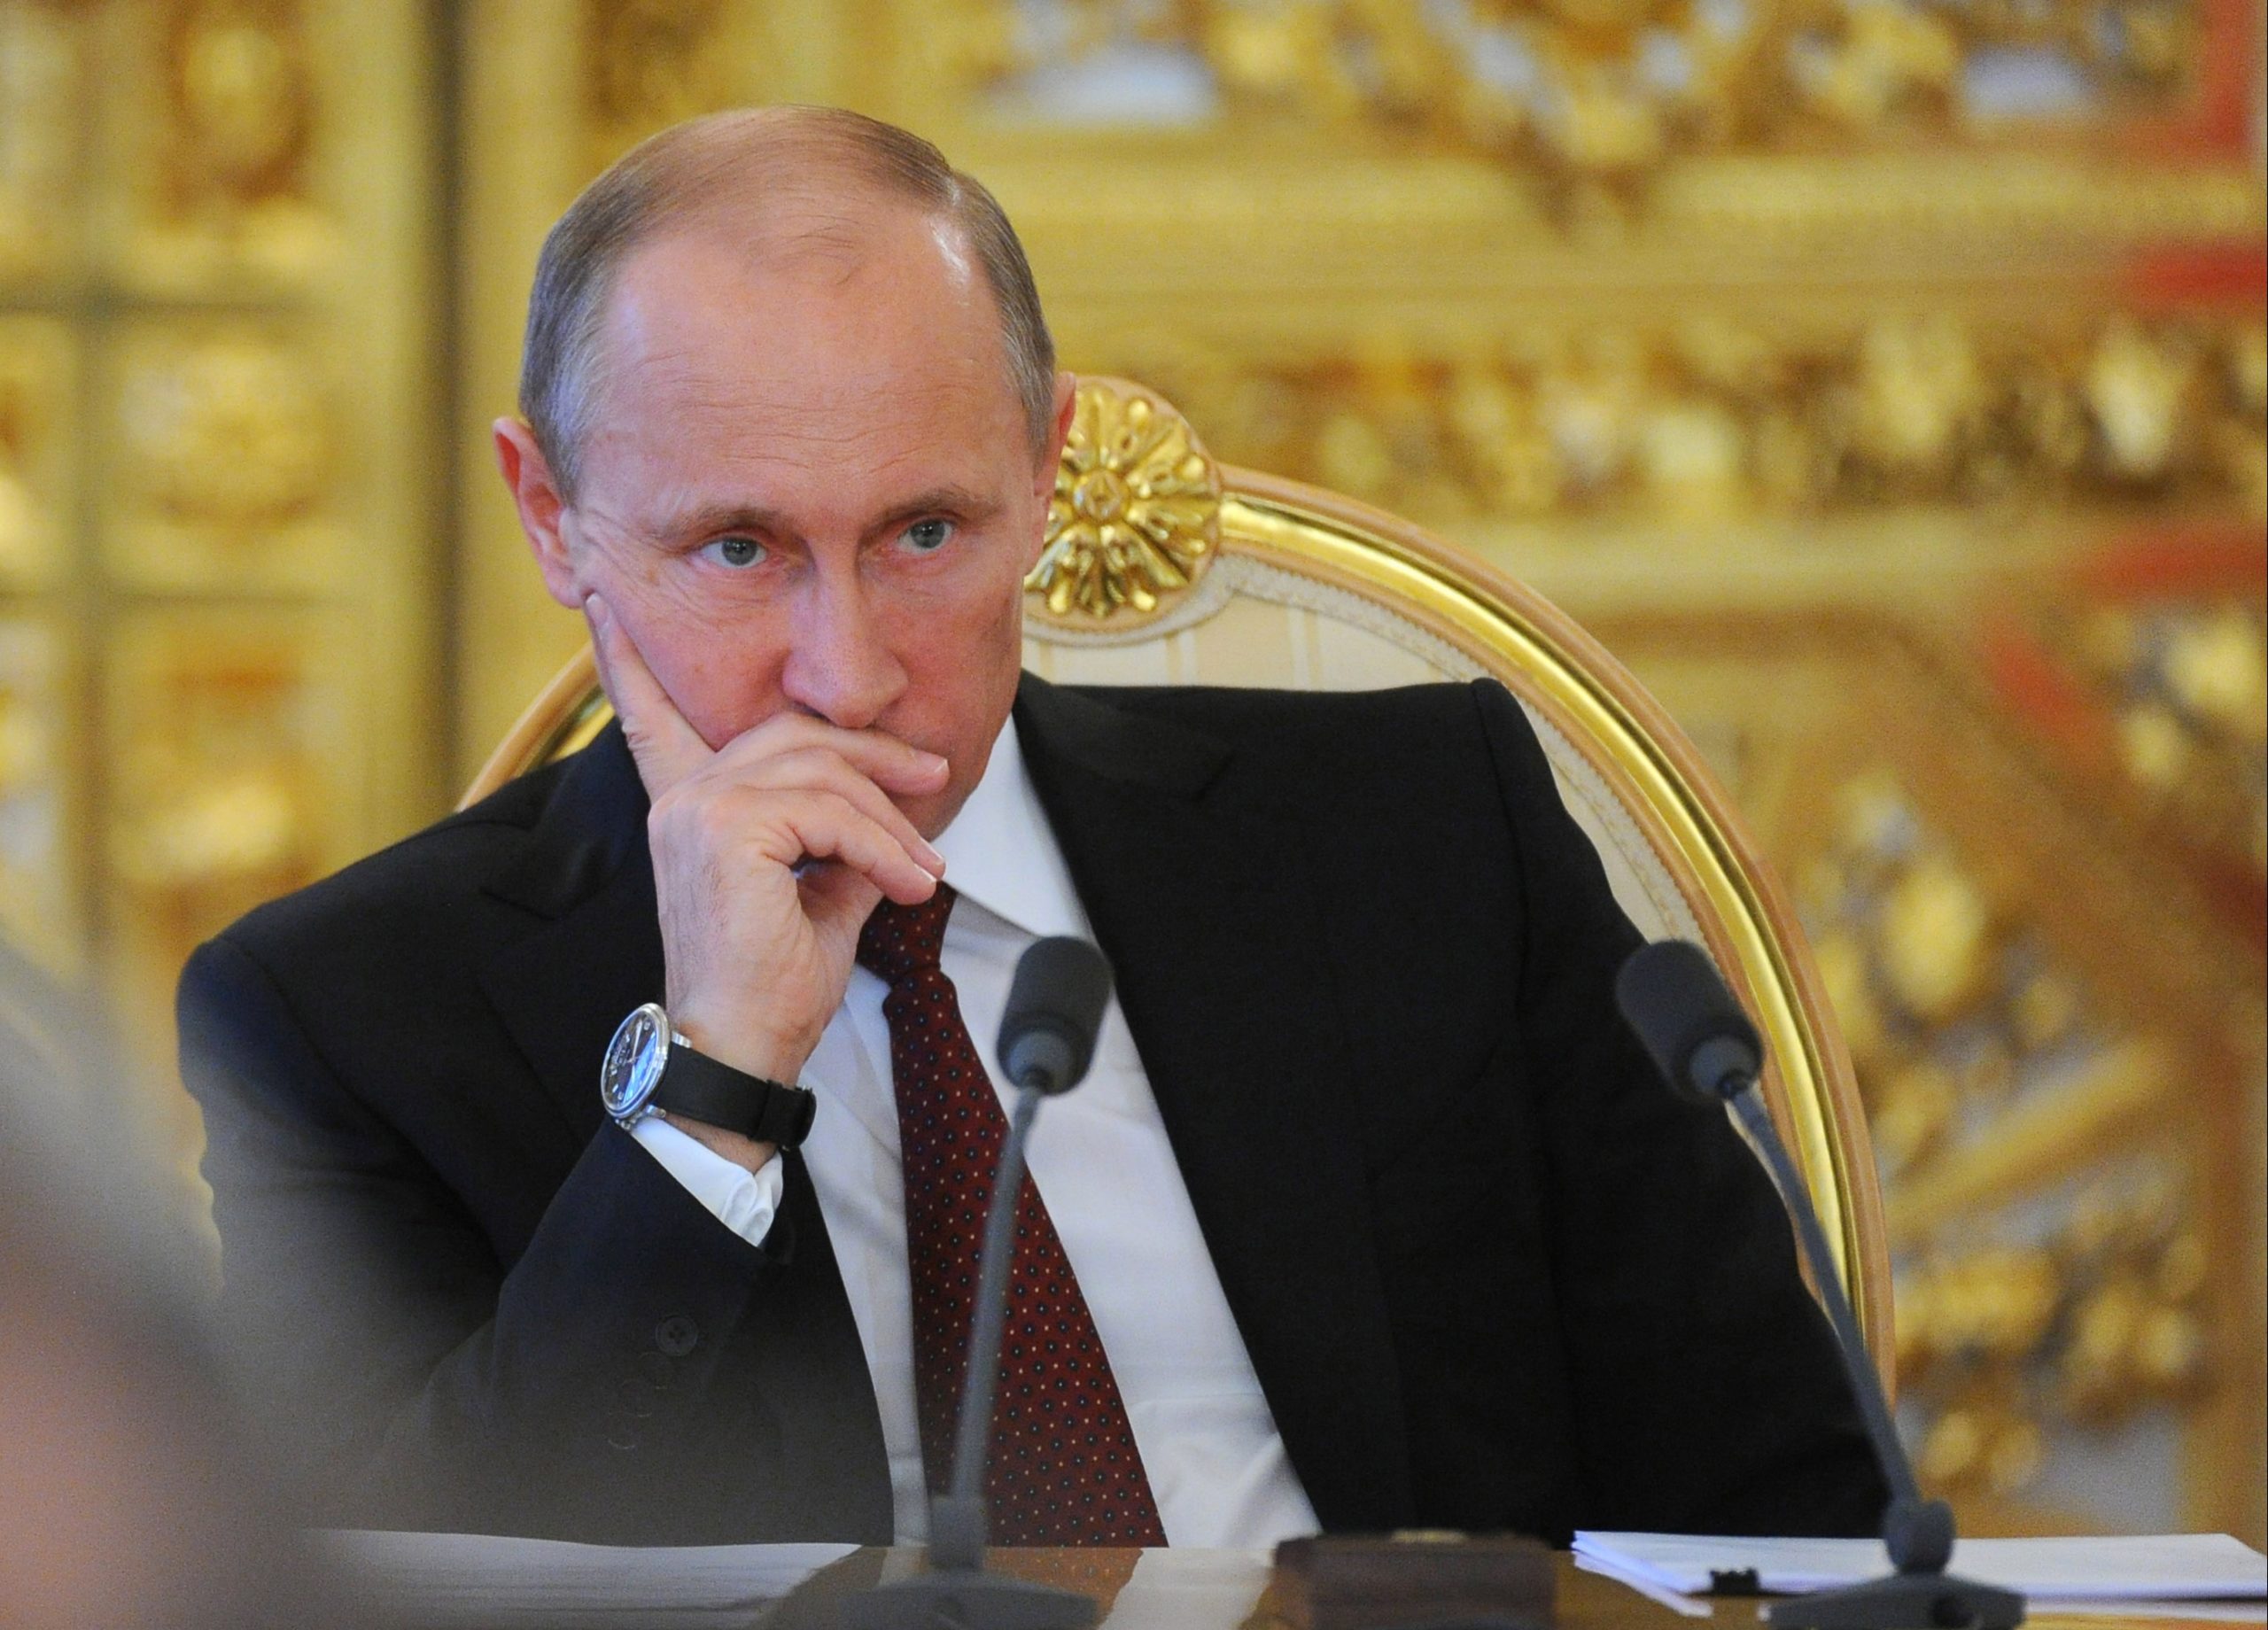 Ρωσία: Ο Βλαντίμιρ Πούτιν χαρακτήρισε "διαπρεπή θρησκευτική προσωπικότητα" τον εκλιπόντα πρώην πάπα Βενέδικτο